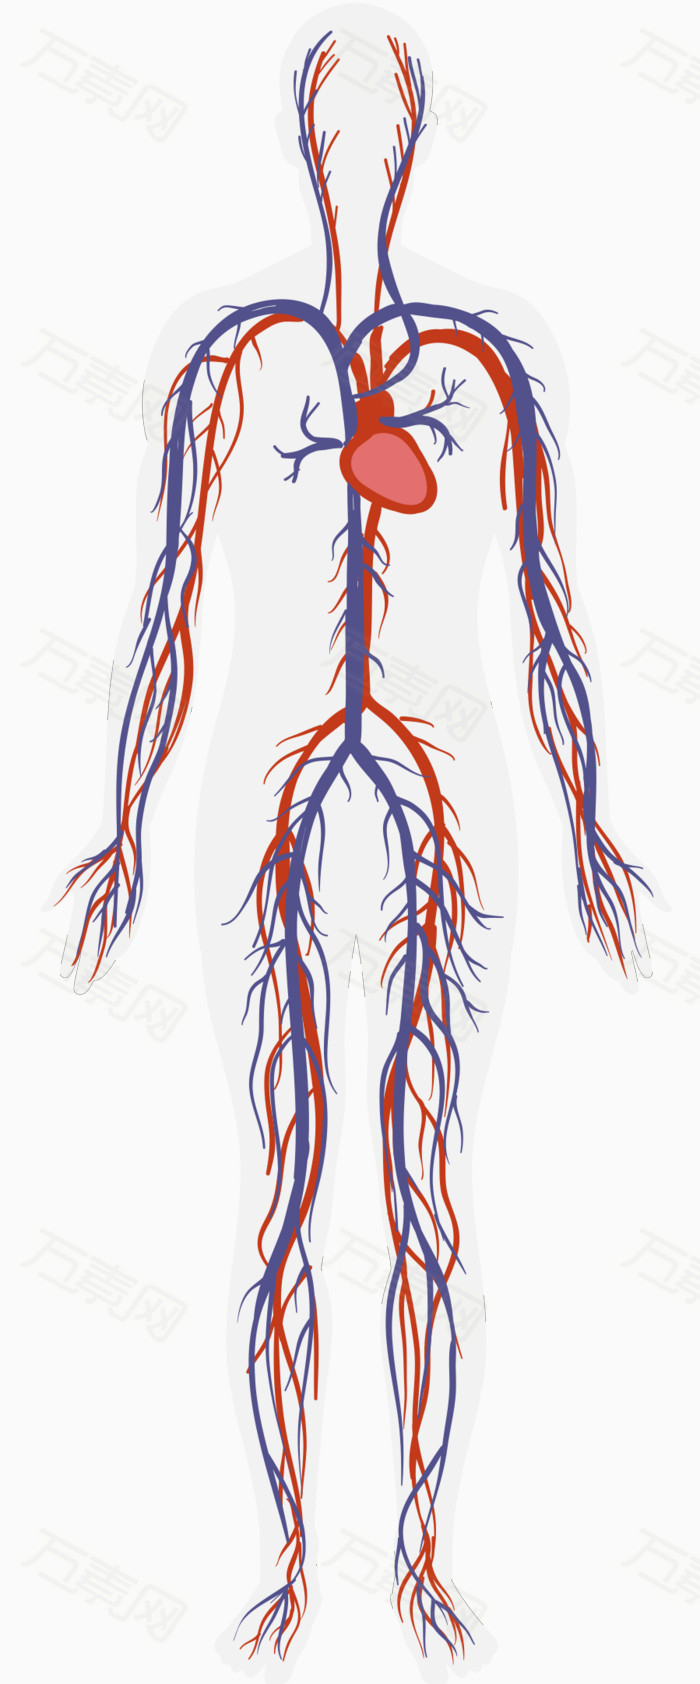 人体血液循环系统图片免费下载_卡通手绘_万素网